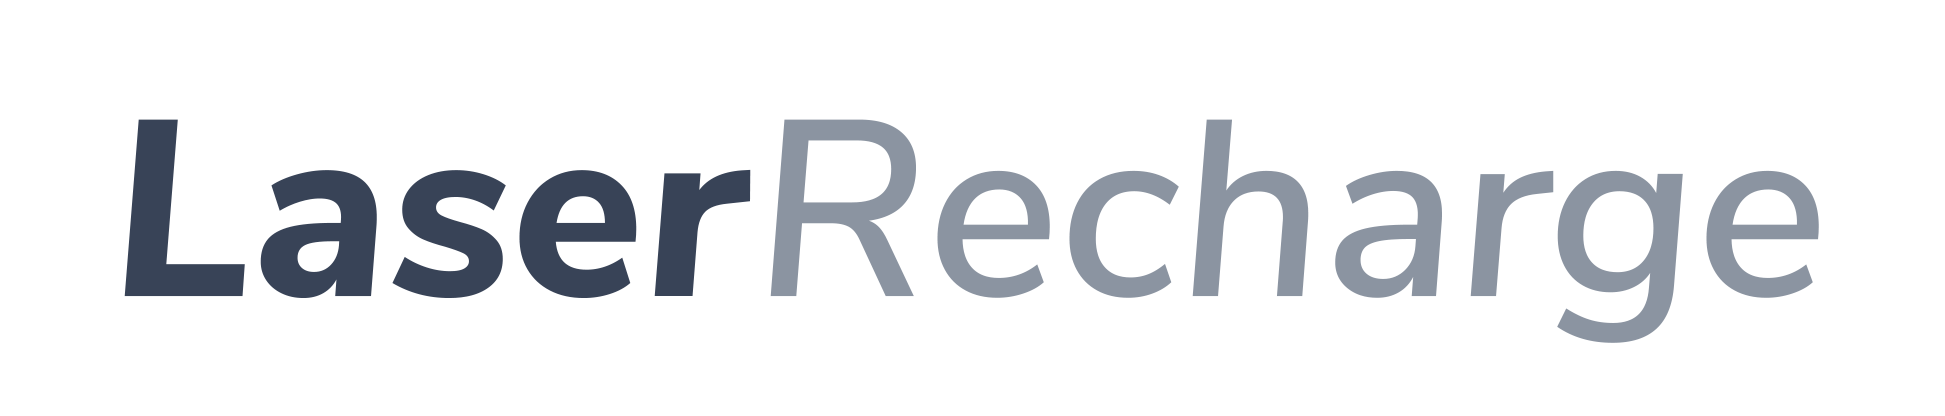 Laser Recharge Logo